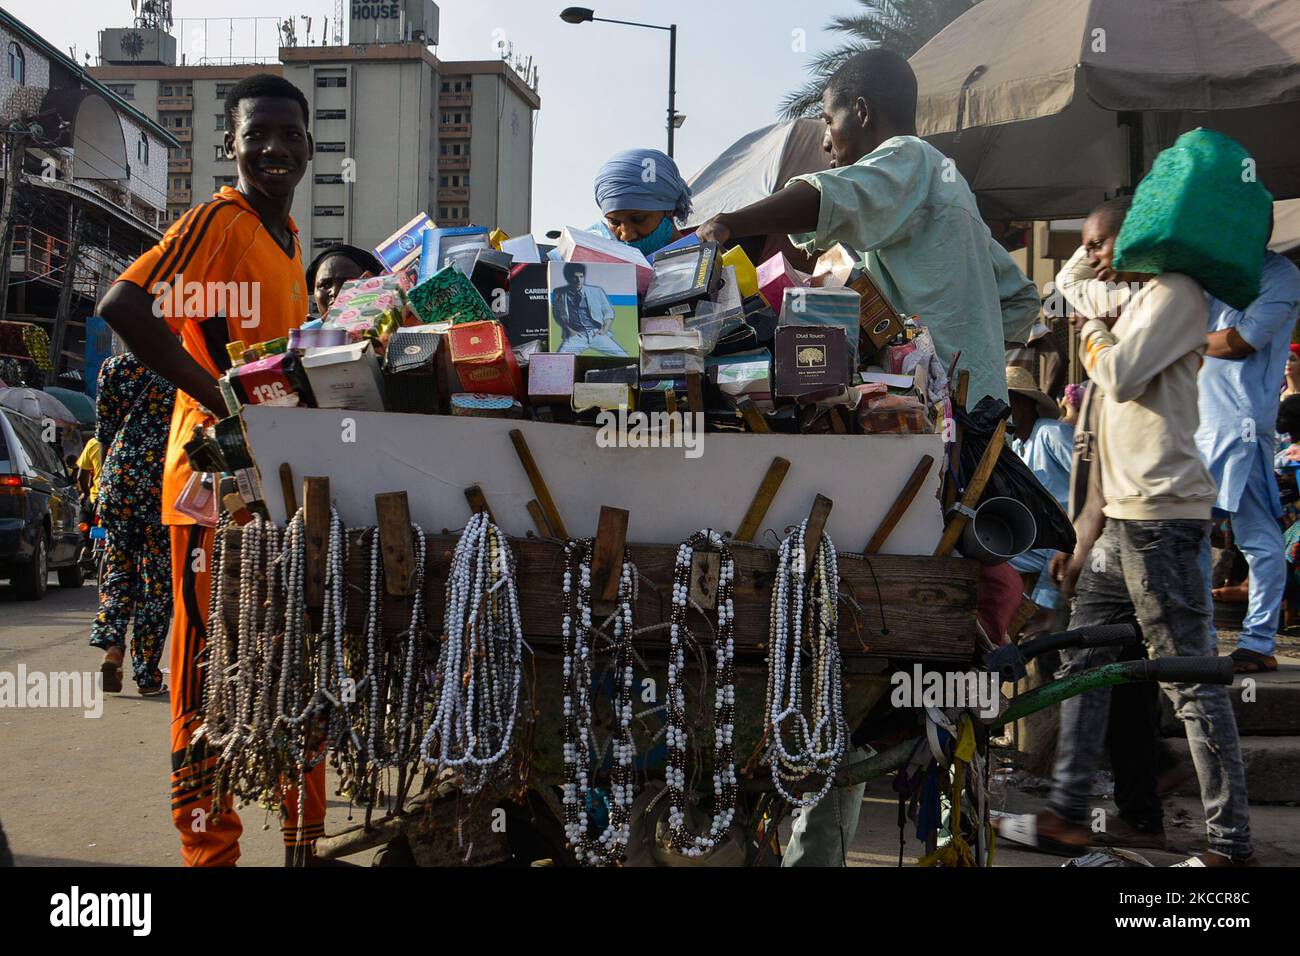 Ein muslimischer Mann verkauft nach einem Gebet am zweiten Tag des heiligen Monats Ramadan entlang der geschäftigen Nnamdi Azikiwe Street in Lagos, Nigeria, am 14. April 2021 Gebetsperlen. Muslime markierten den Beginn des Ramadan am Dienstag, der Ramadan ist geprägt von langen Gebeten, bis in die Abenddämmerung dauernden Fasten und nächtlichen Festen mit Familie und Freunden, obwohl überfüllte Schulter-an-Schulter-Treffen in der Moschee und große Treffen zu Mahlzeiten aufgrund der anhaltenden Verbreitung von COVID-19 weiterhin verboten sind. (Foto von Olukayode Jaiyeola/NurPhoto) Stockfoto